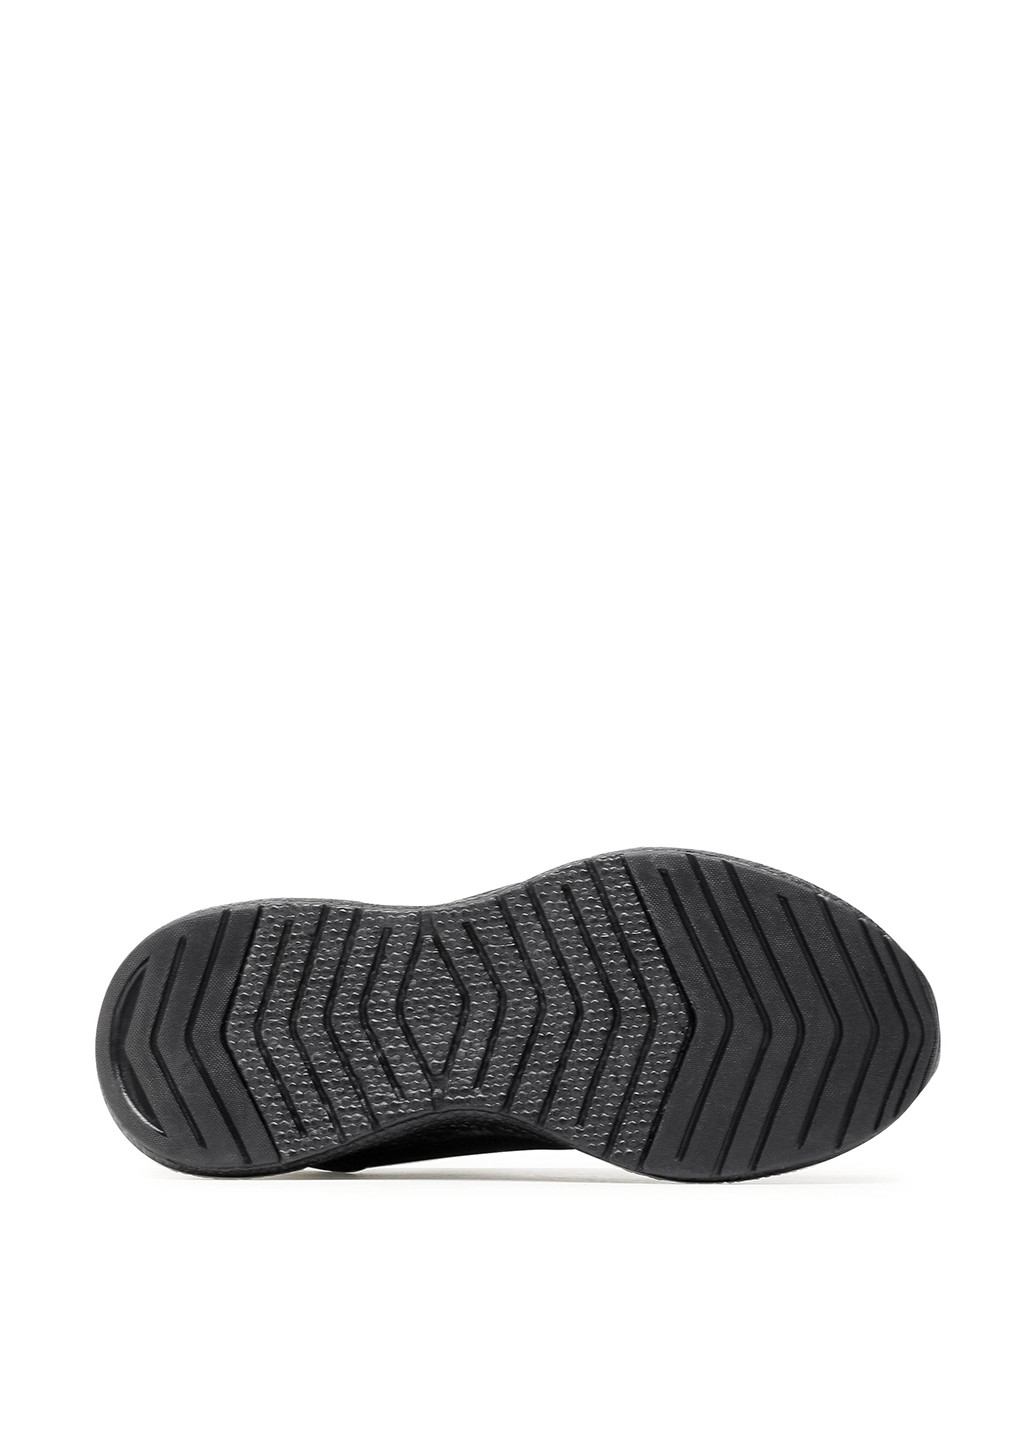 Черные демисезонные кроссовки Sprandi MP07-01434-01